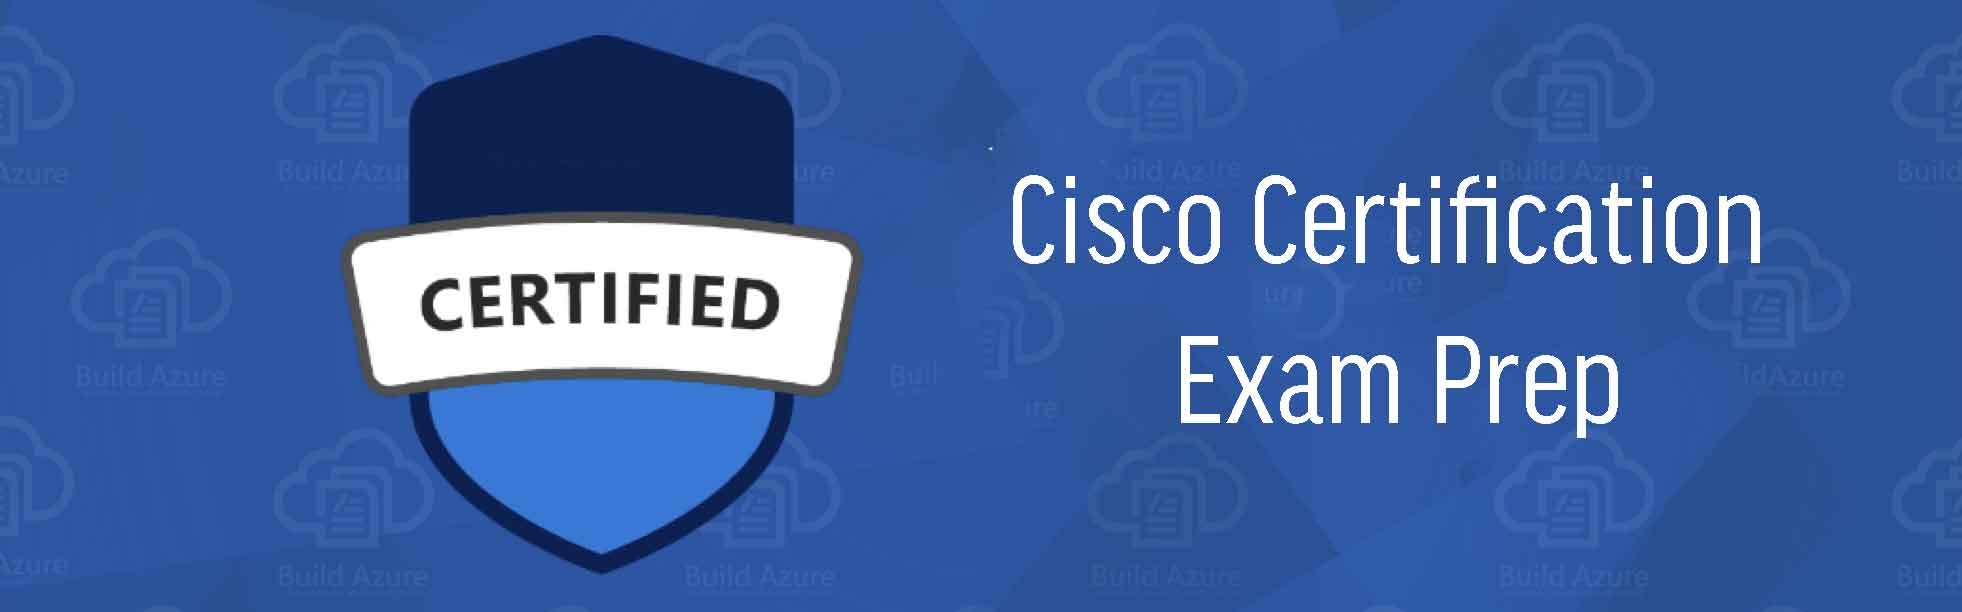 Cisco Certification Exam Prep